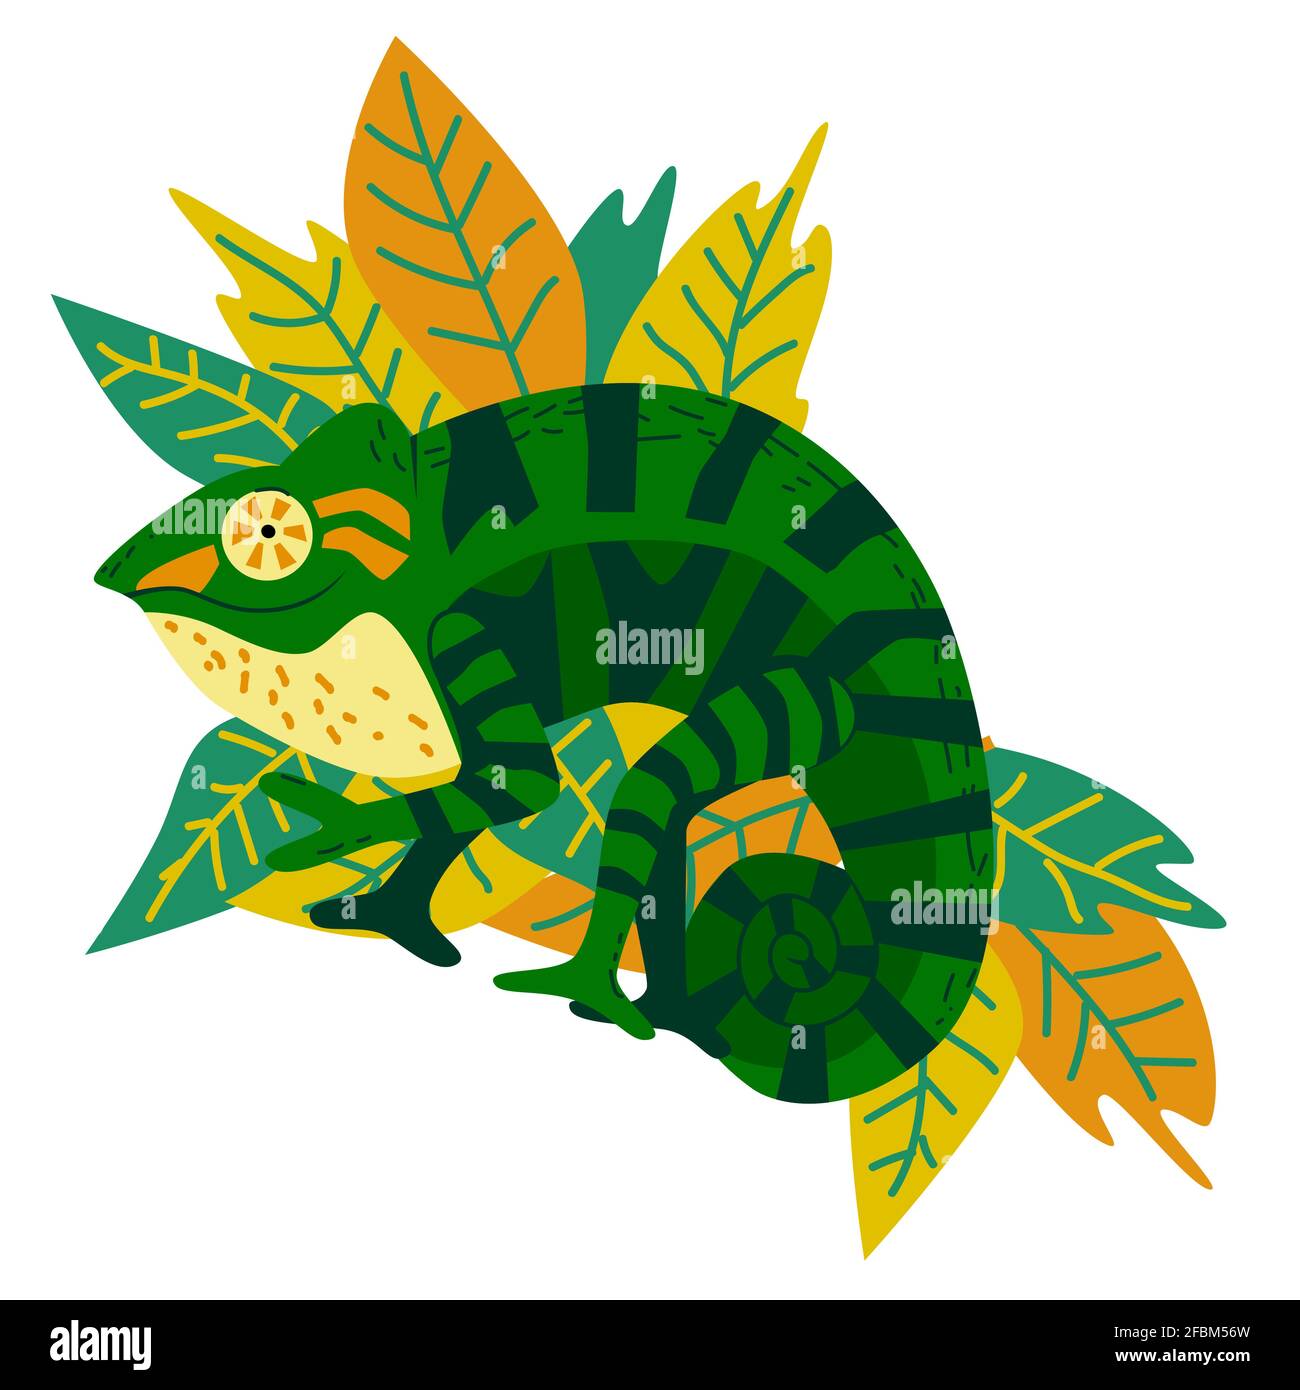 Handgezeichnetes niedliches Panther-Chamäleon, exotisches Maskottchen zeigt Friedenszeichen und lächelt, heller positiver Charakter auf tropischem Blatthintergrund, Avatar, Logo, Stock Vektor